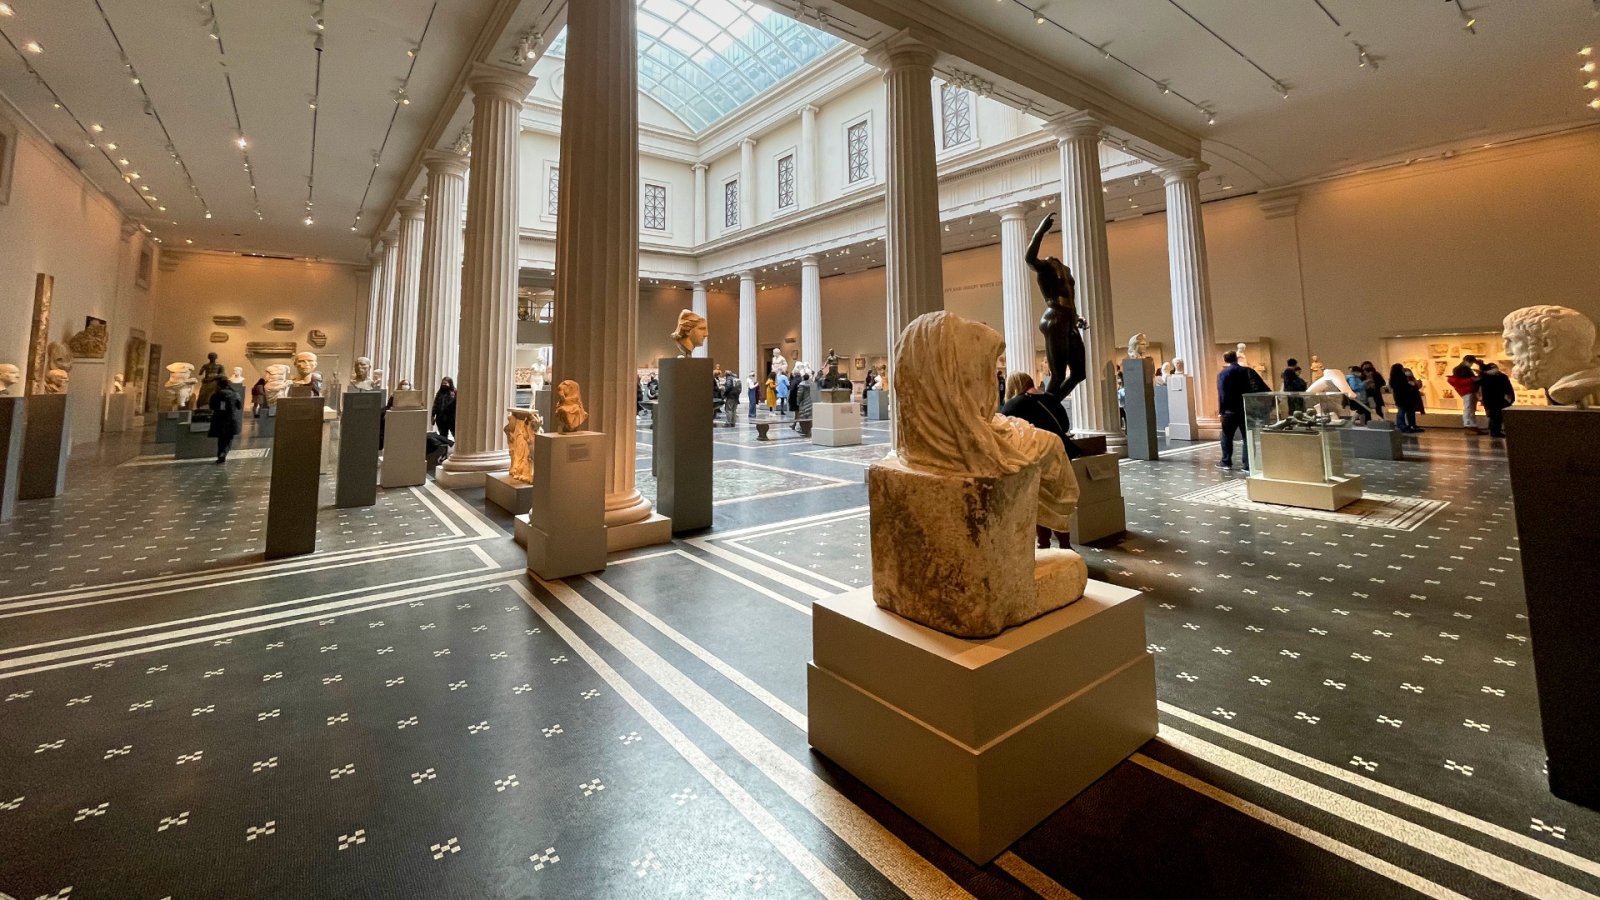 メトロポリタン美術館の来館者数は 170 万人減 - 最近最大の落ち込みを見せた米国の美術館